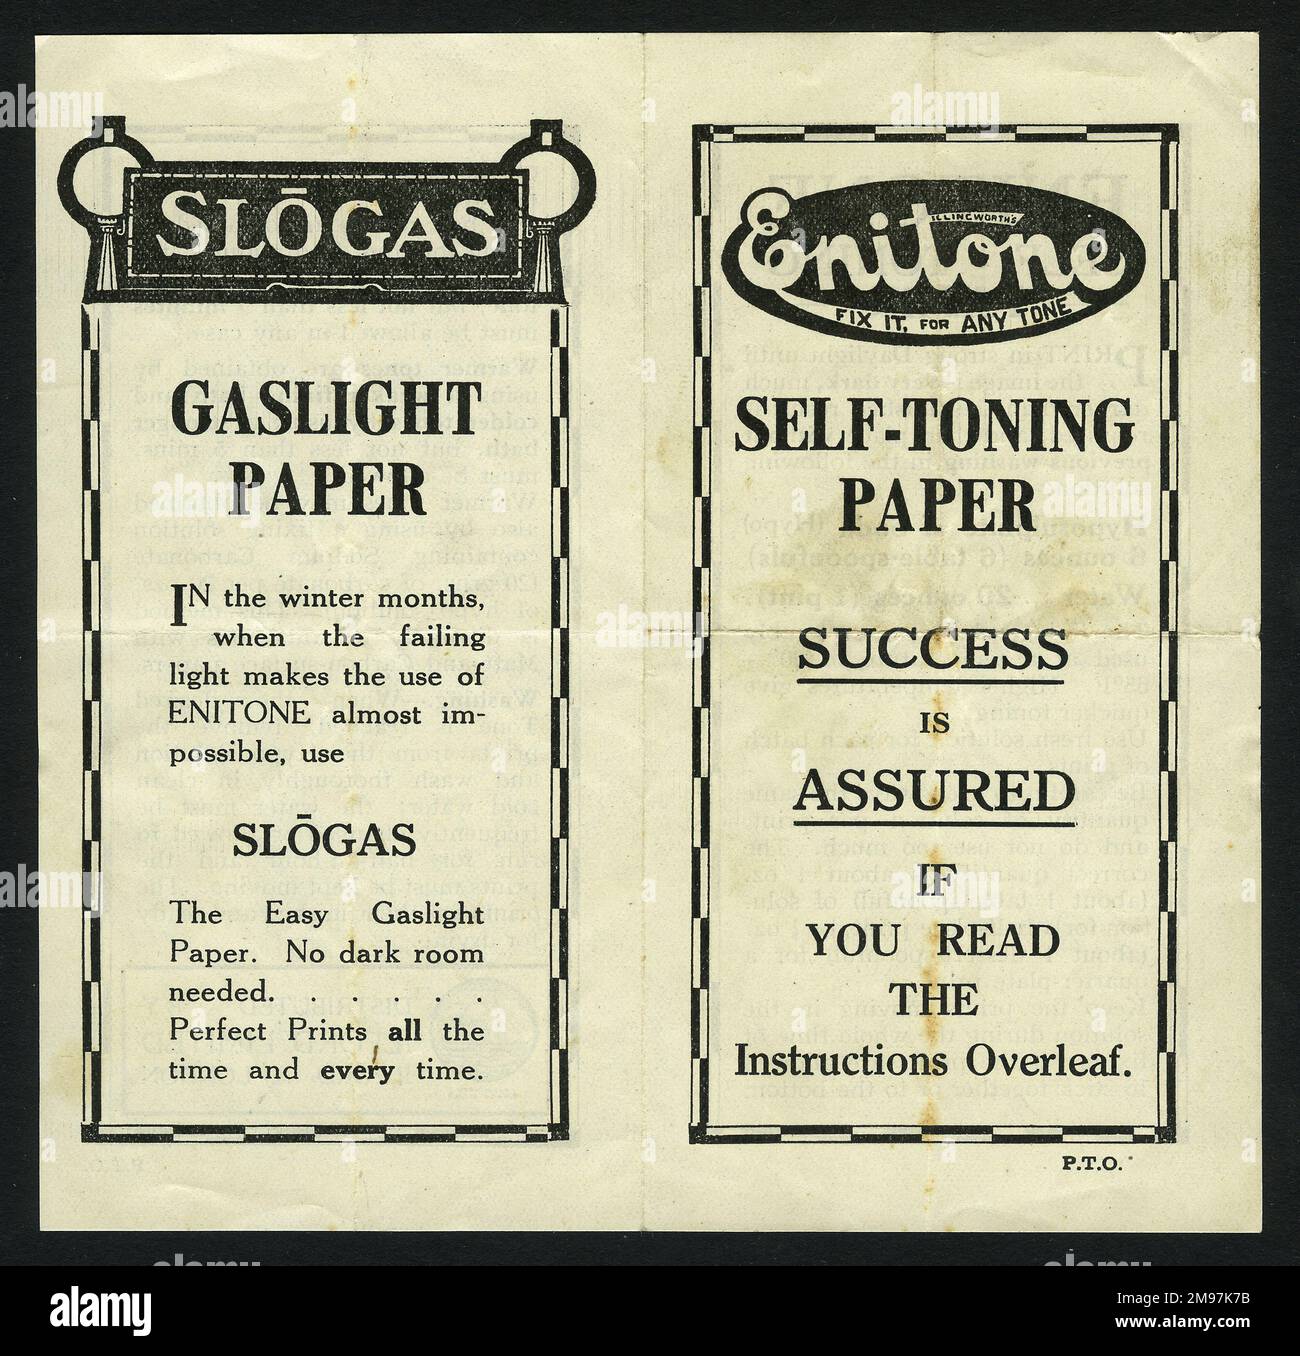 Bedienungsanleitung für selbsttonendes Fotopapier von Enitone mit einer Anzeige für Gaslichtpapier Slogas auf der Rückseite. (1 von 2) Stockfoto